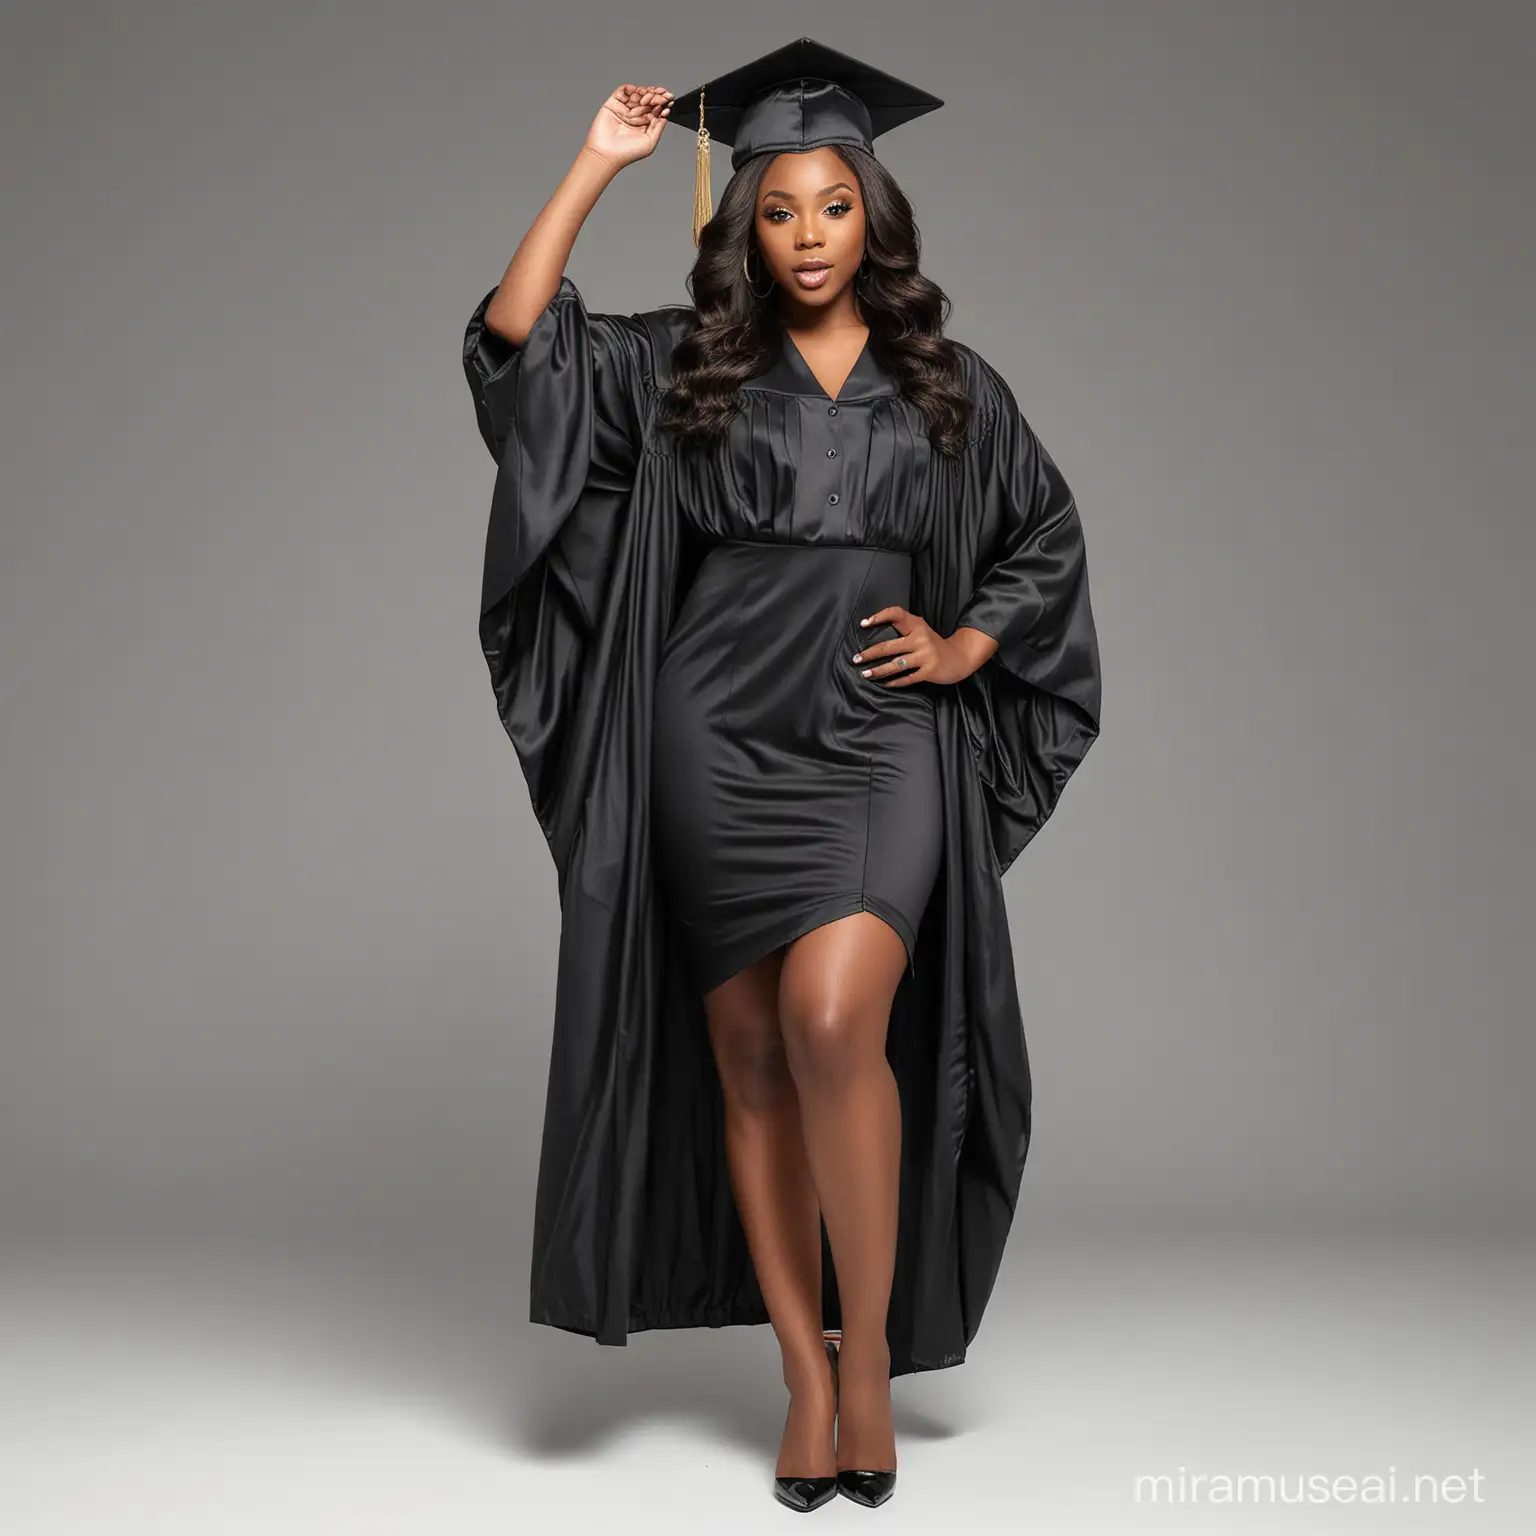 Elegant Graduation Portrait of a Confident Black Woman